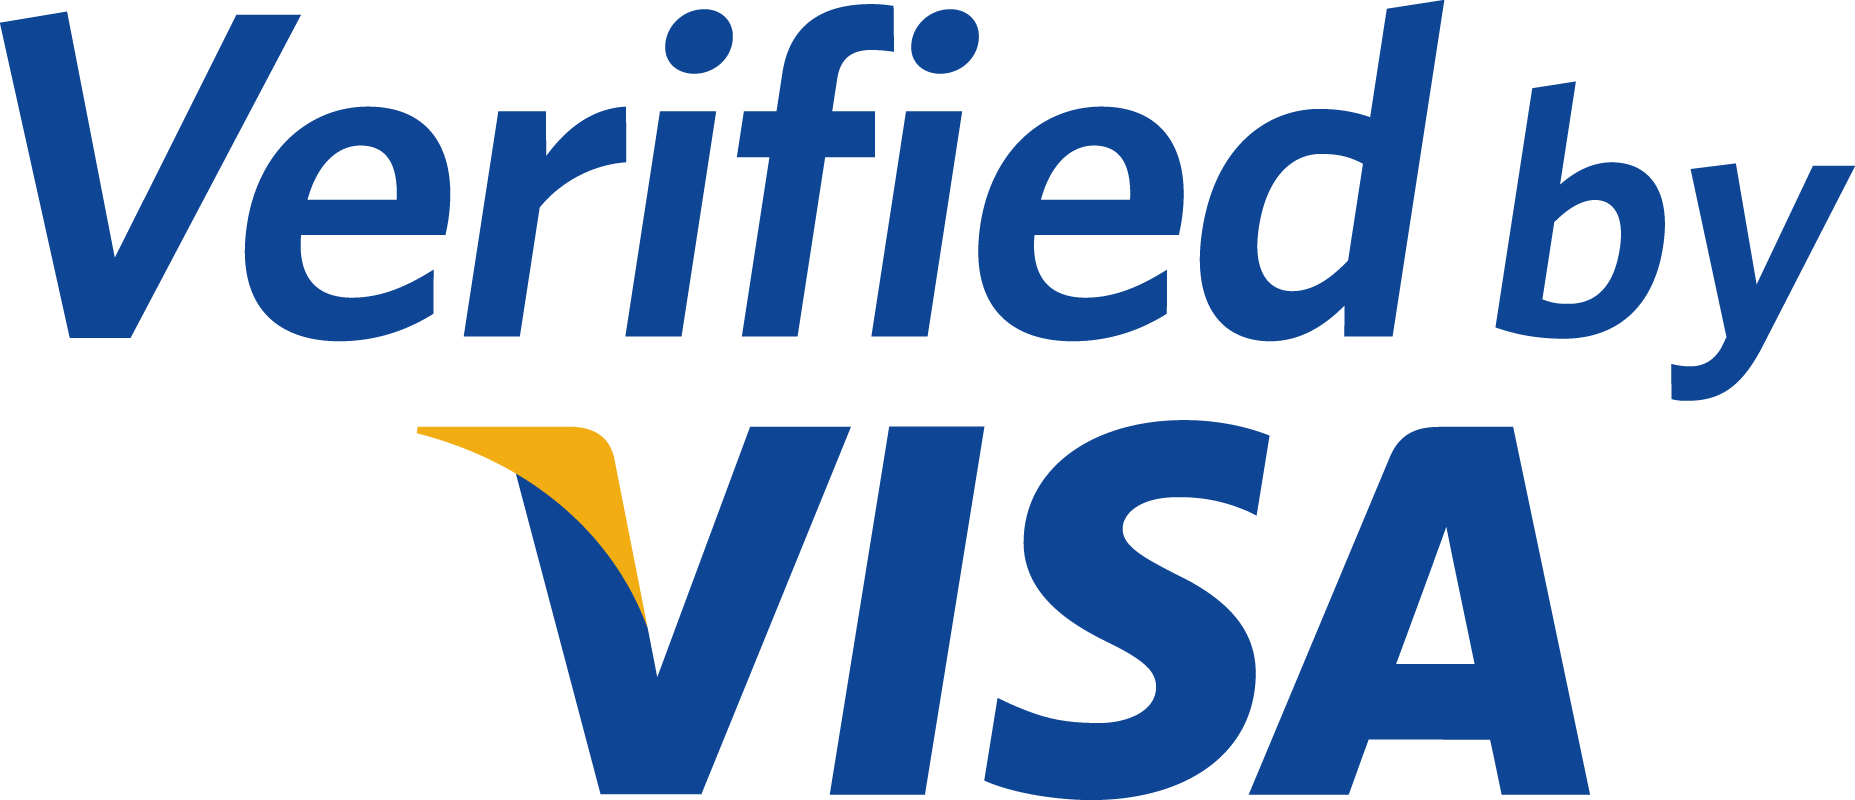 logo paiement visa verified